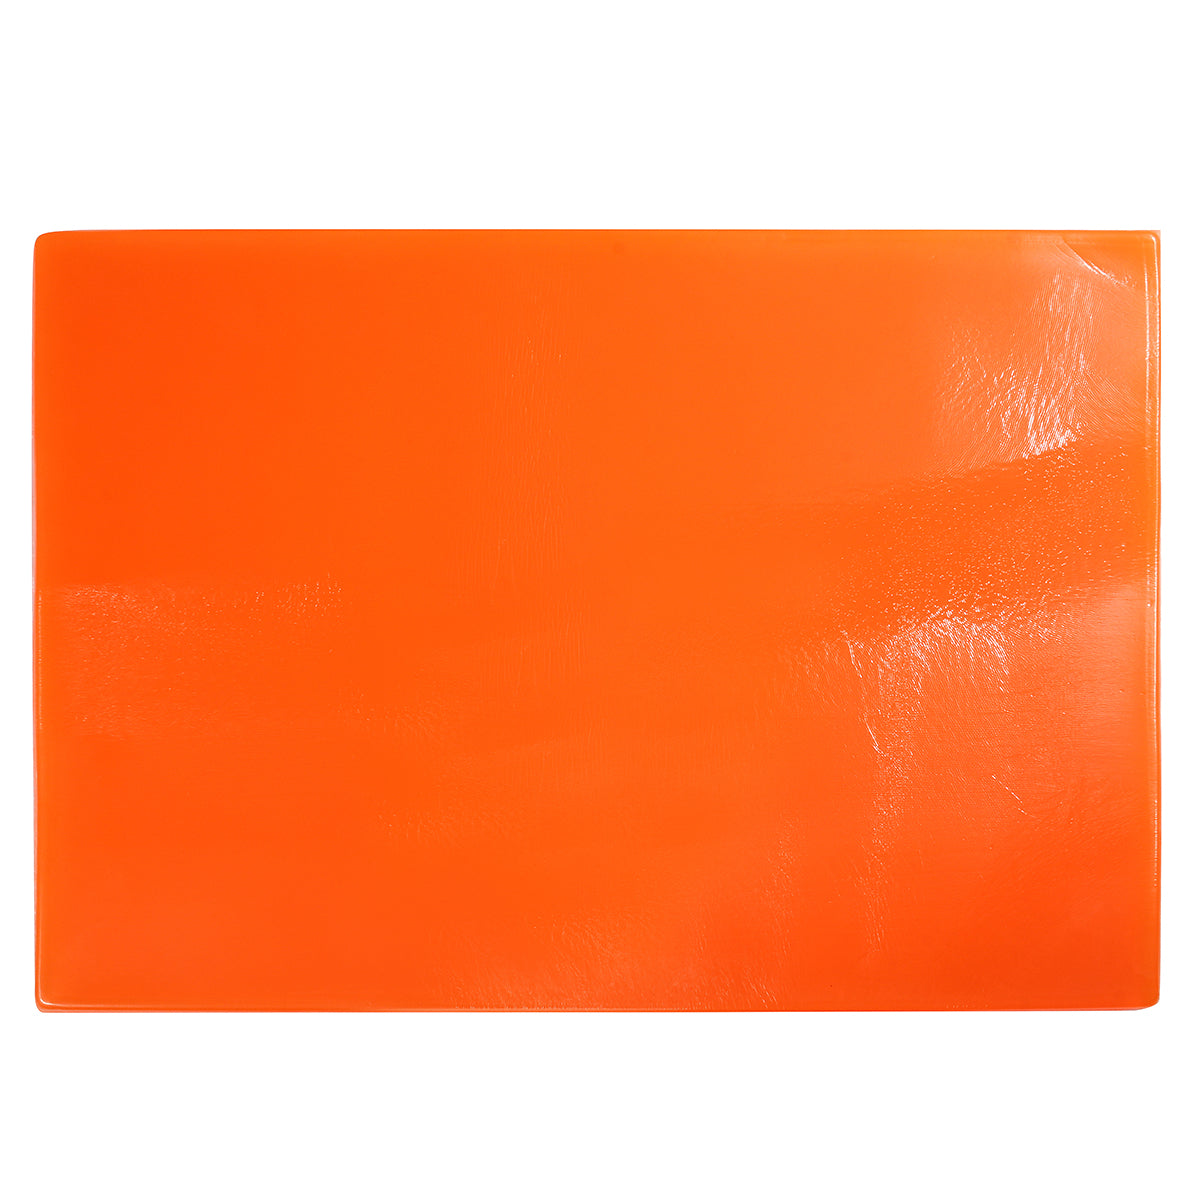 Orange Red Cool Seat Cushion Gel Pad Shock Absorption Mat Comfortable Soft Orange Motorcycle ATV Office